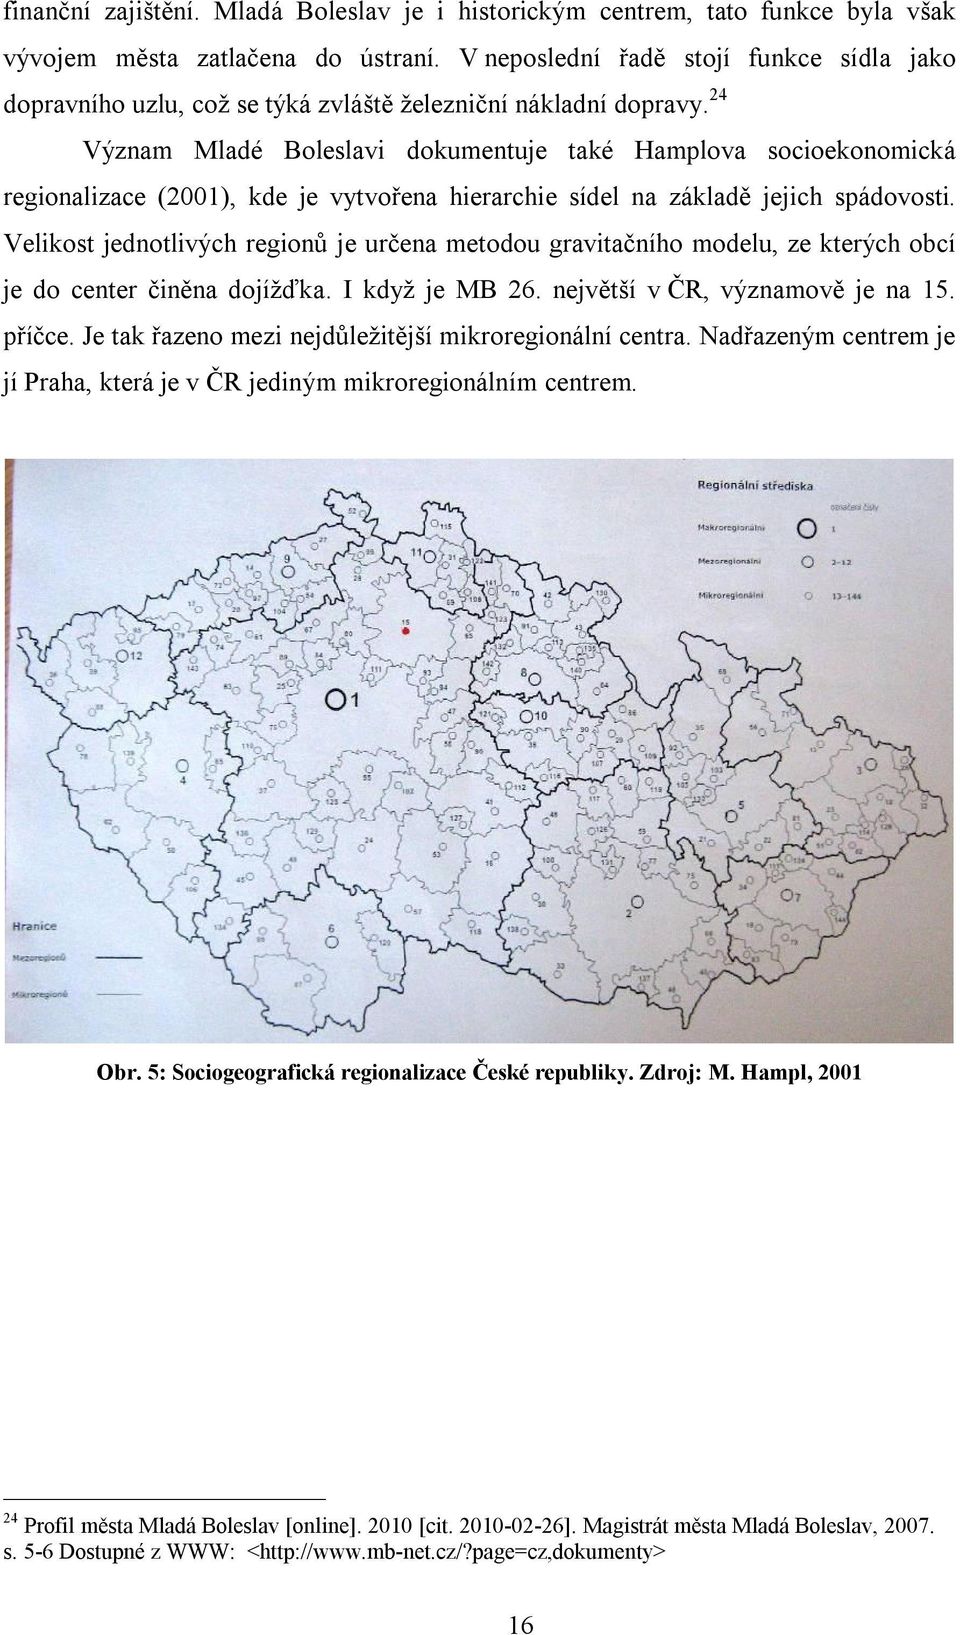 24 Význam Mladé Boleslavi dokumentuje také Hamplova socioekonomická regionalizace (2001), kde je vytvořena hierarchie sídel na základě jejich spádovosti.